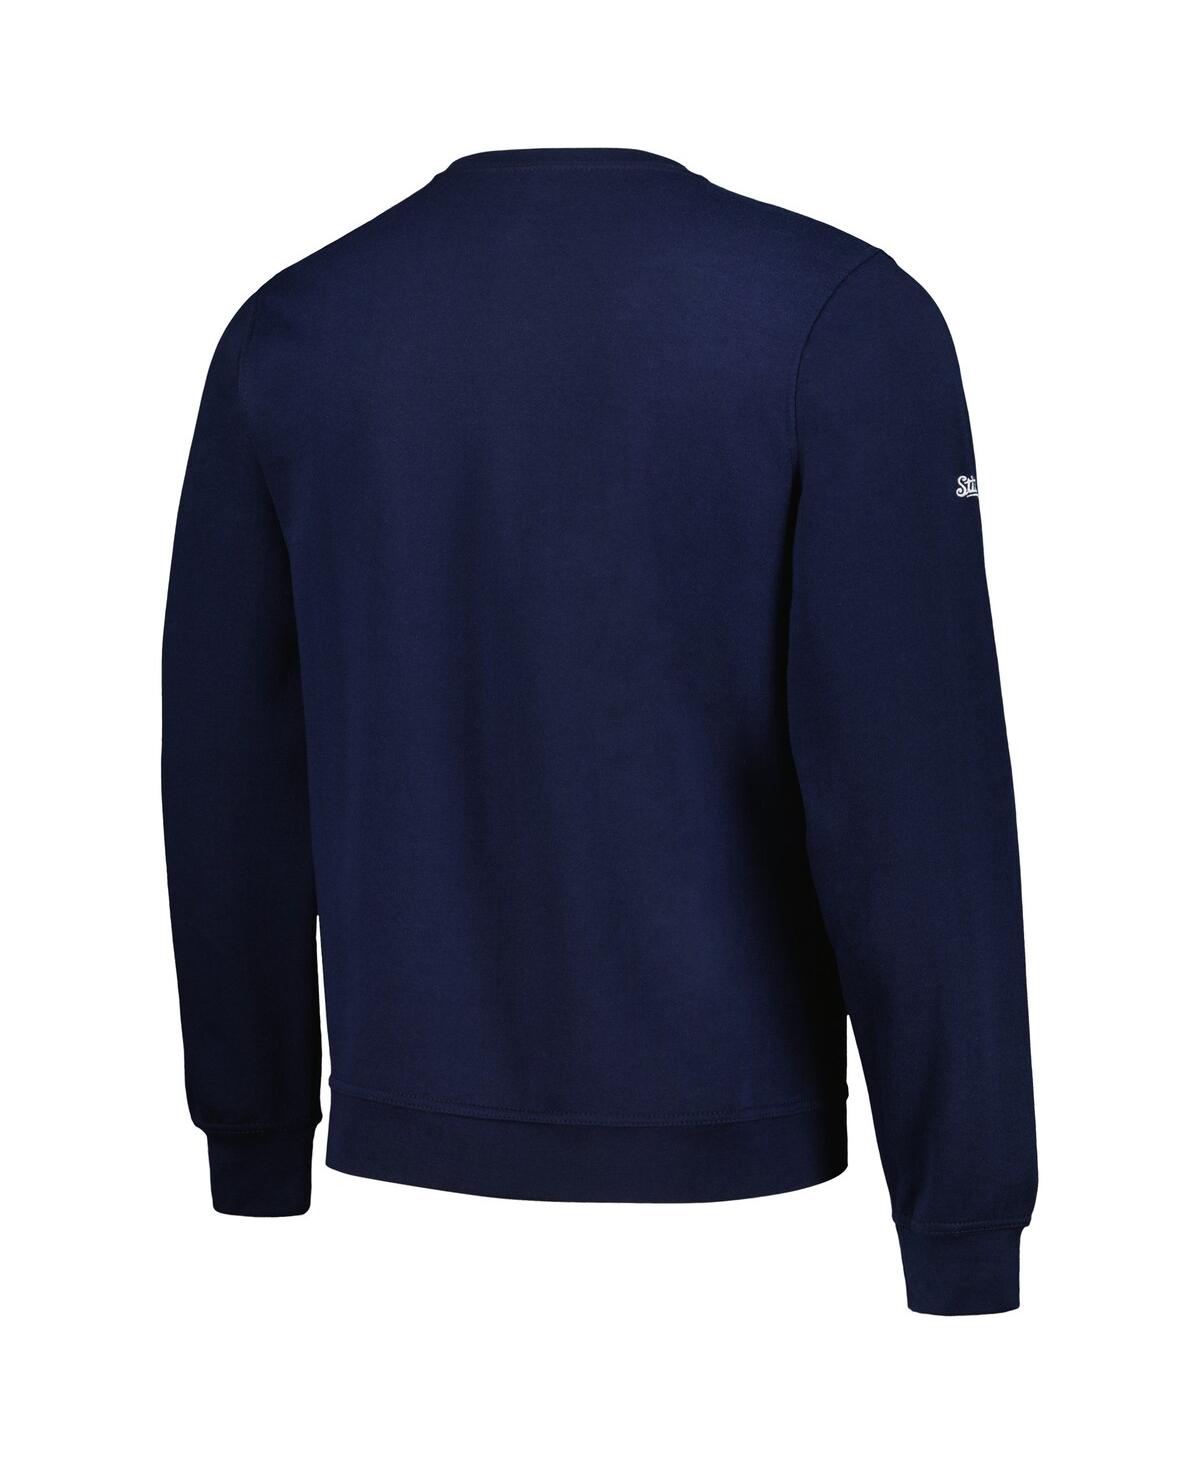 Shop Stitches Men's  Navy Milwaukee Brewers Pullover Sweatshirt